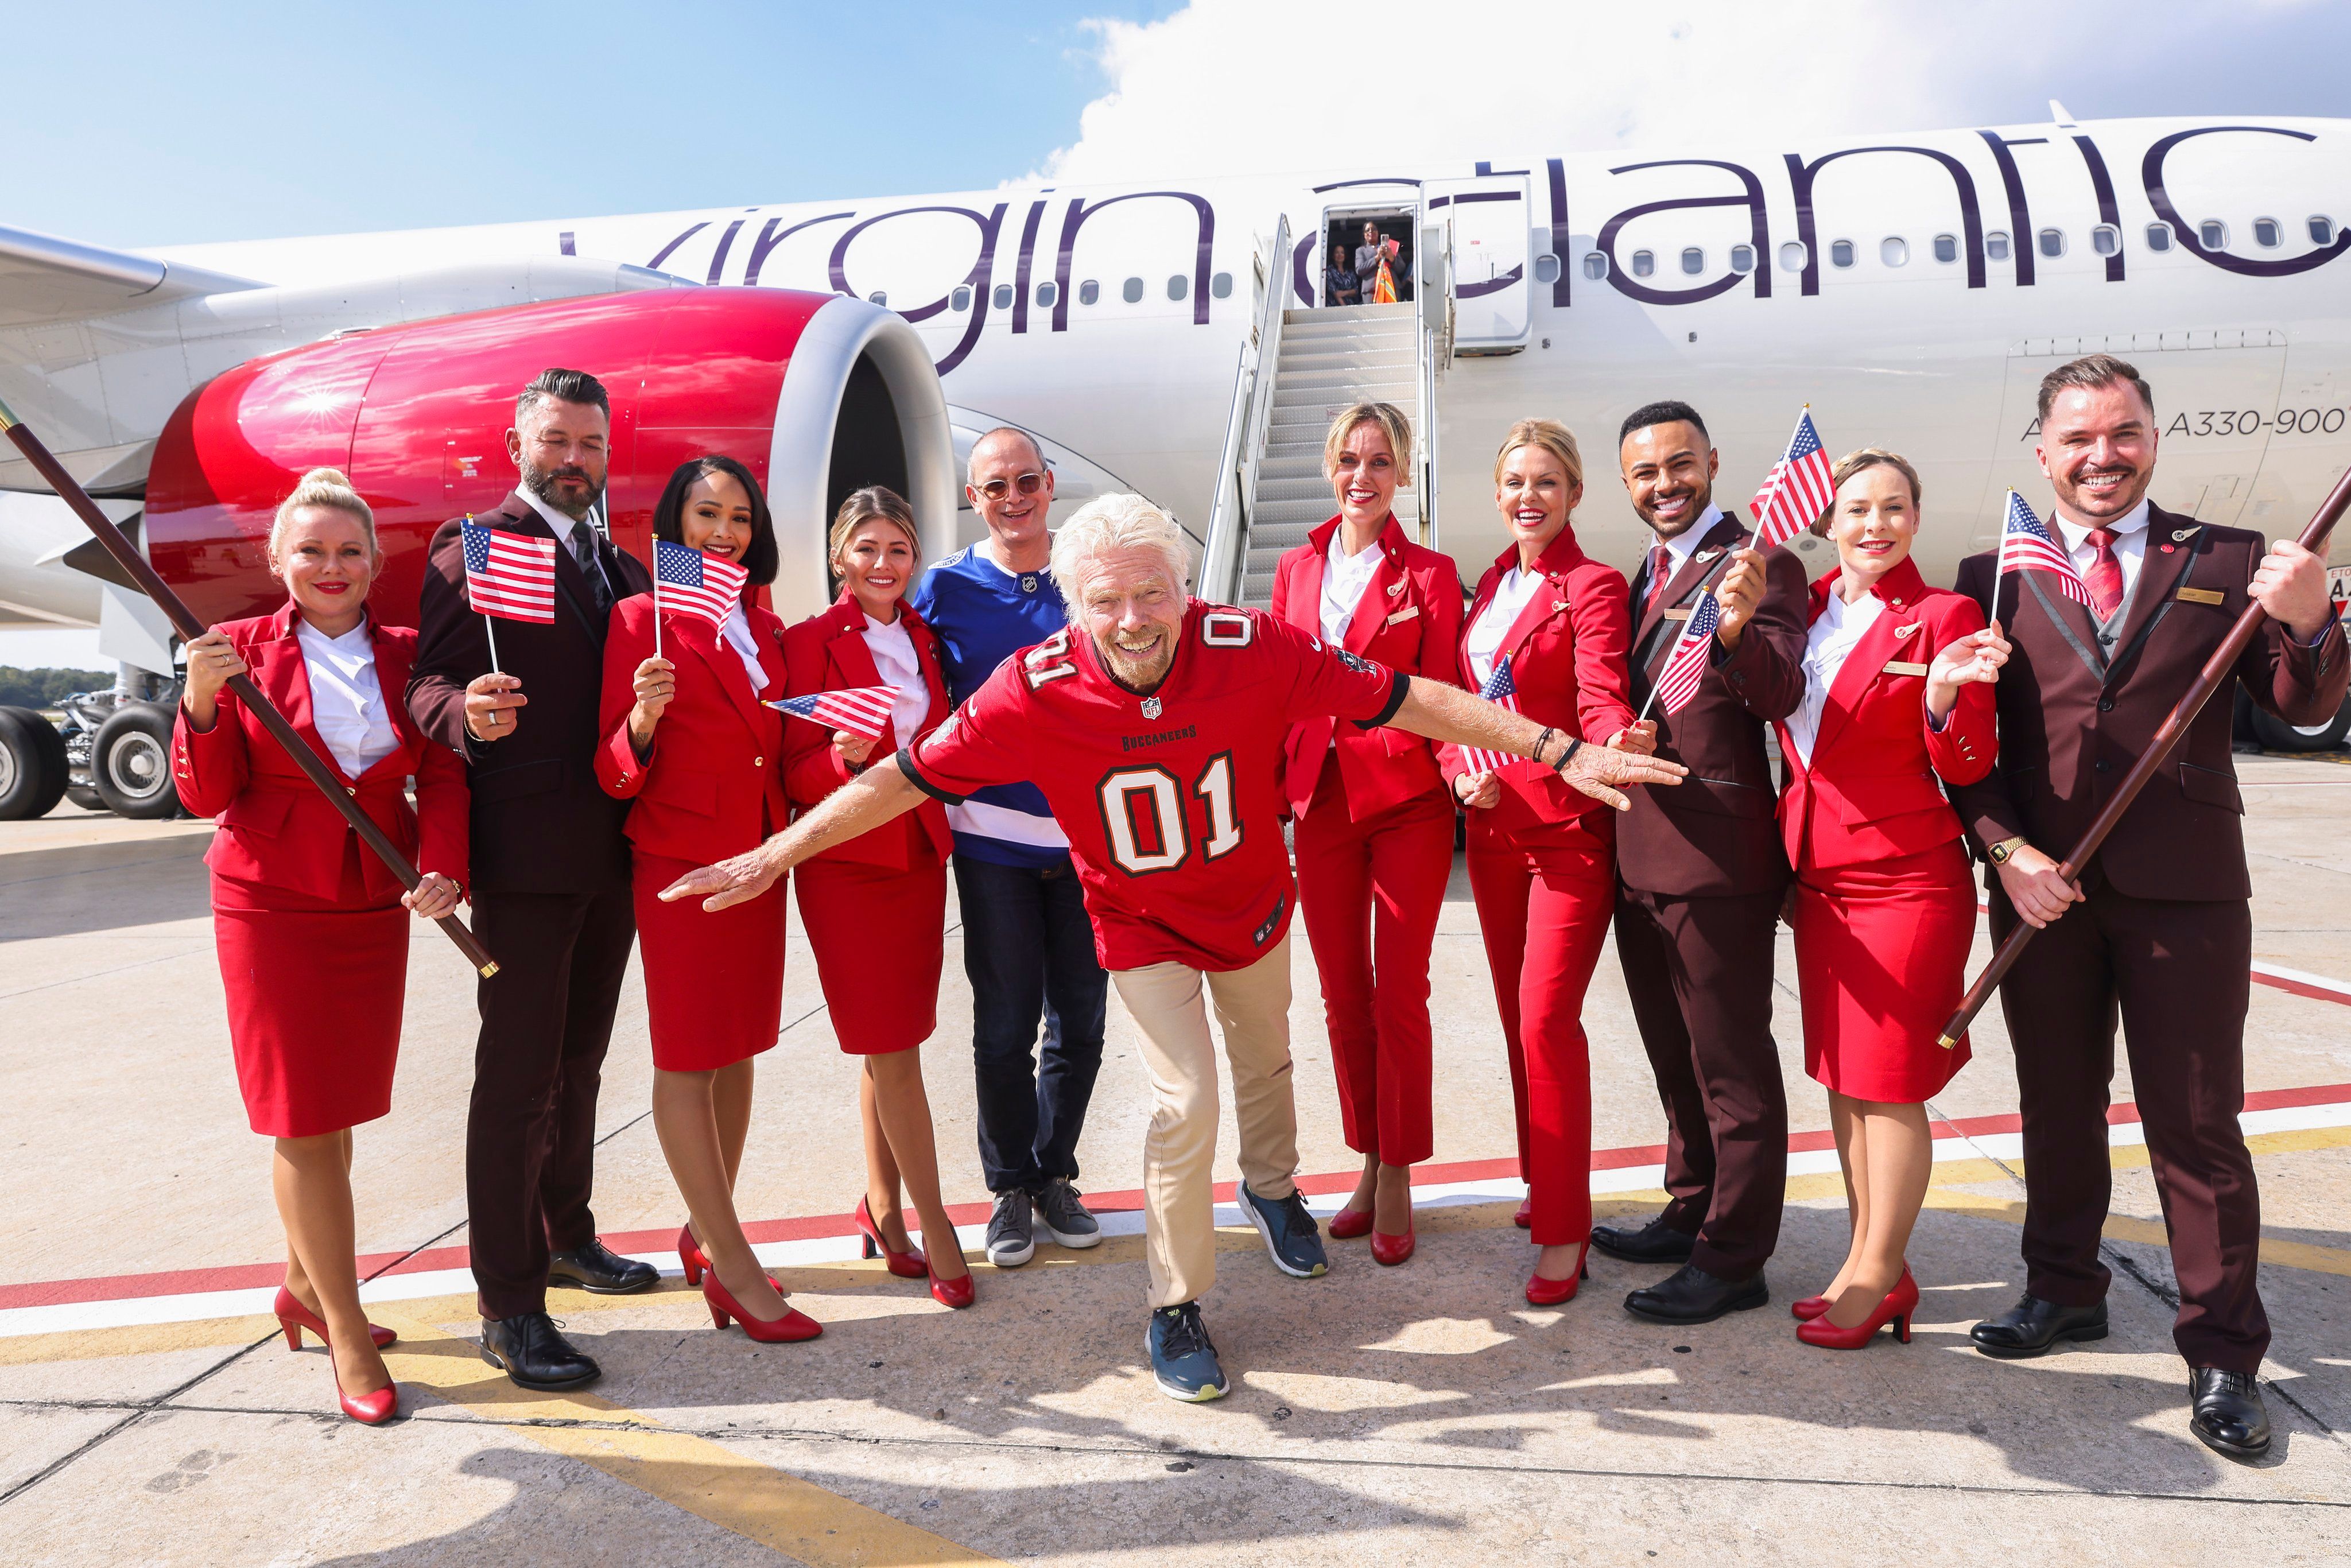 Virgin Atlantic Tampa launch